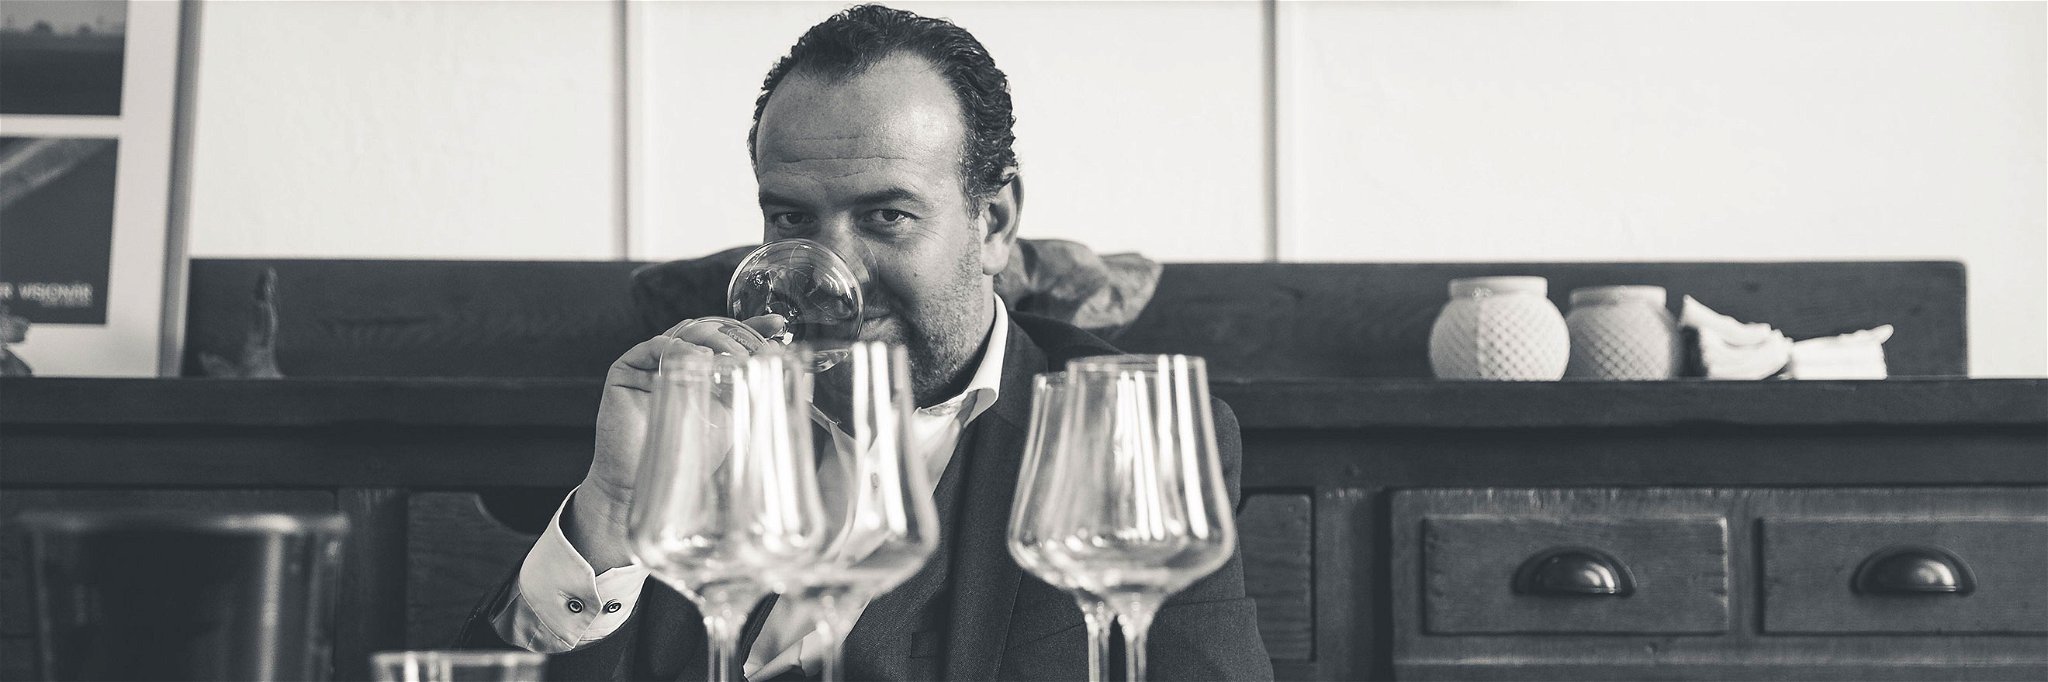 Der burgenländische Spitzenwinzer Gerhard Kracher bringt seine besten Weinen aus Österreich und der Welt in die Schweiz.